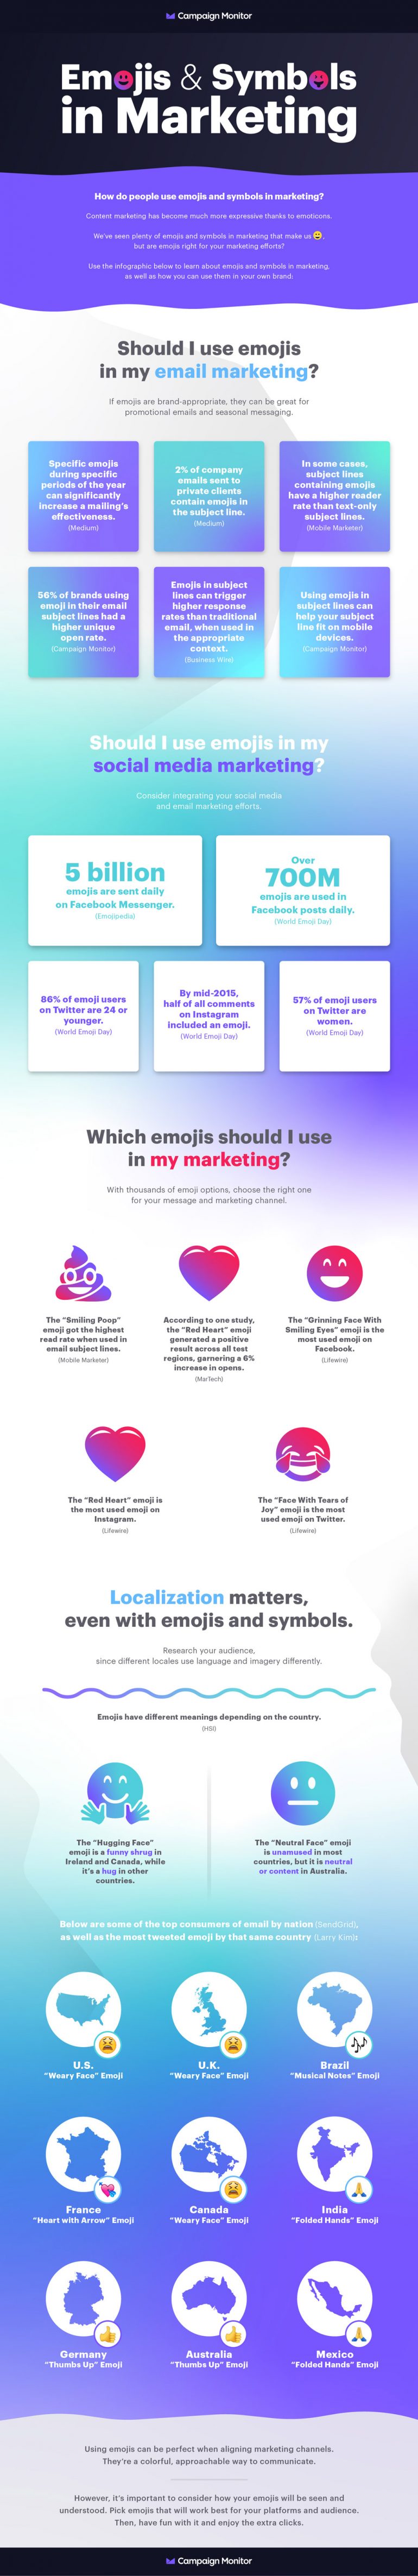 Infographic met cijfers over het gebruik van emoji in online marketing.